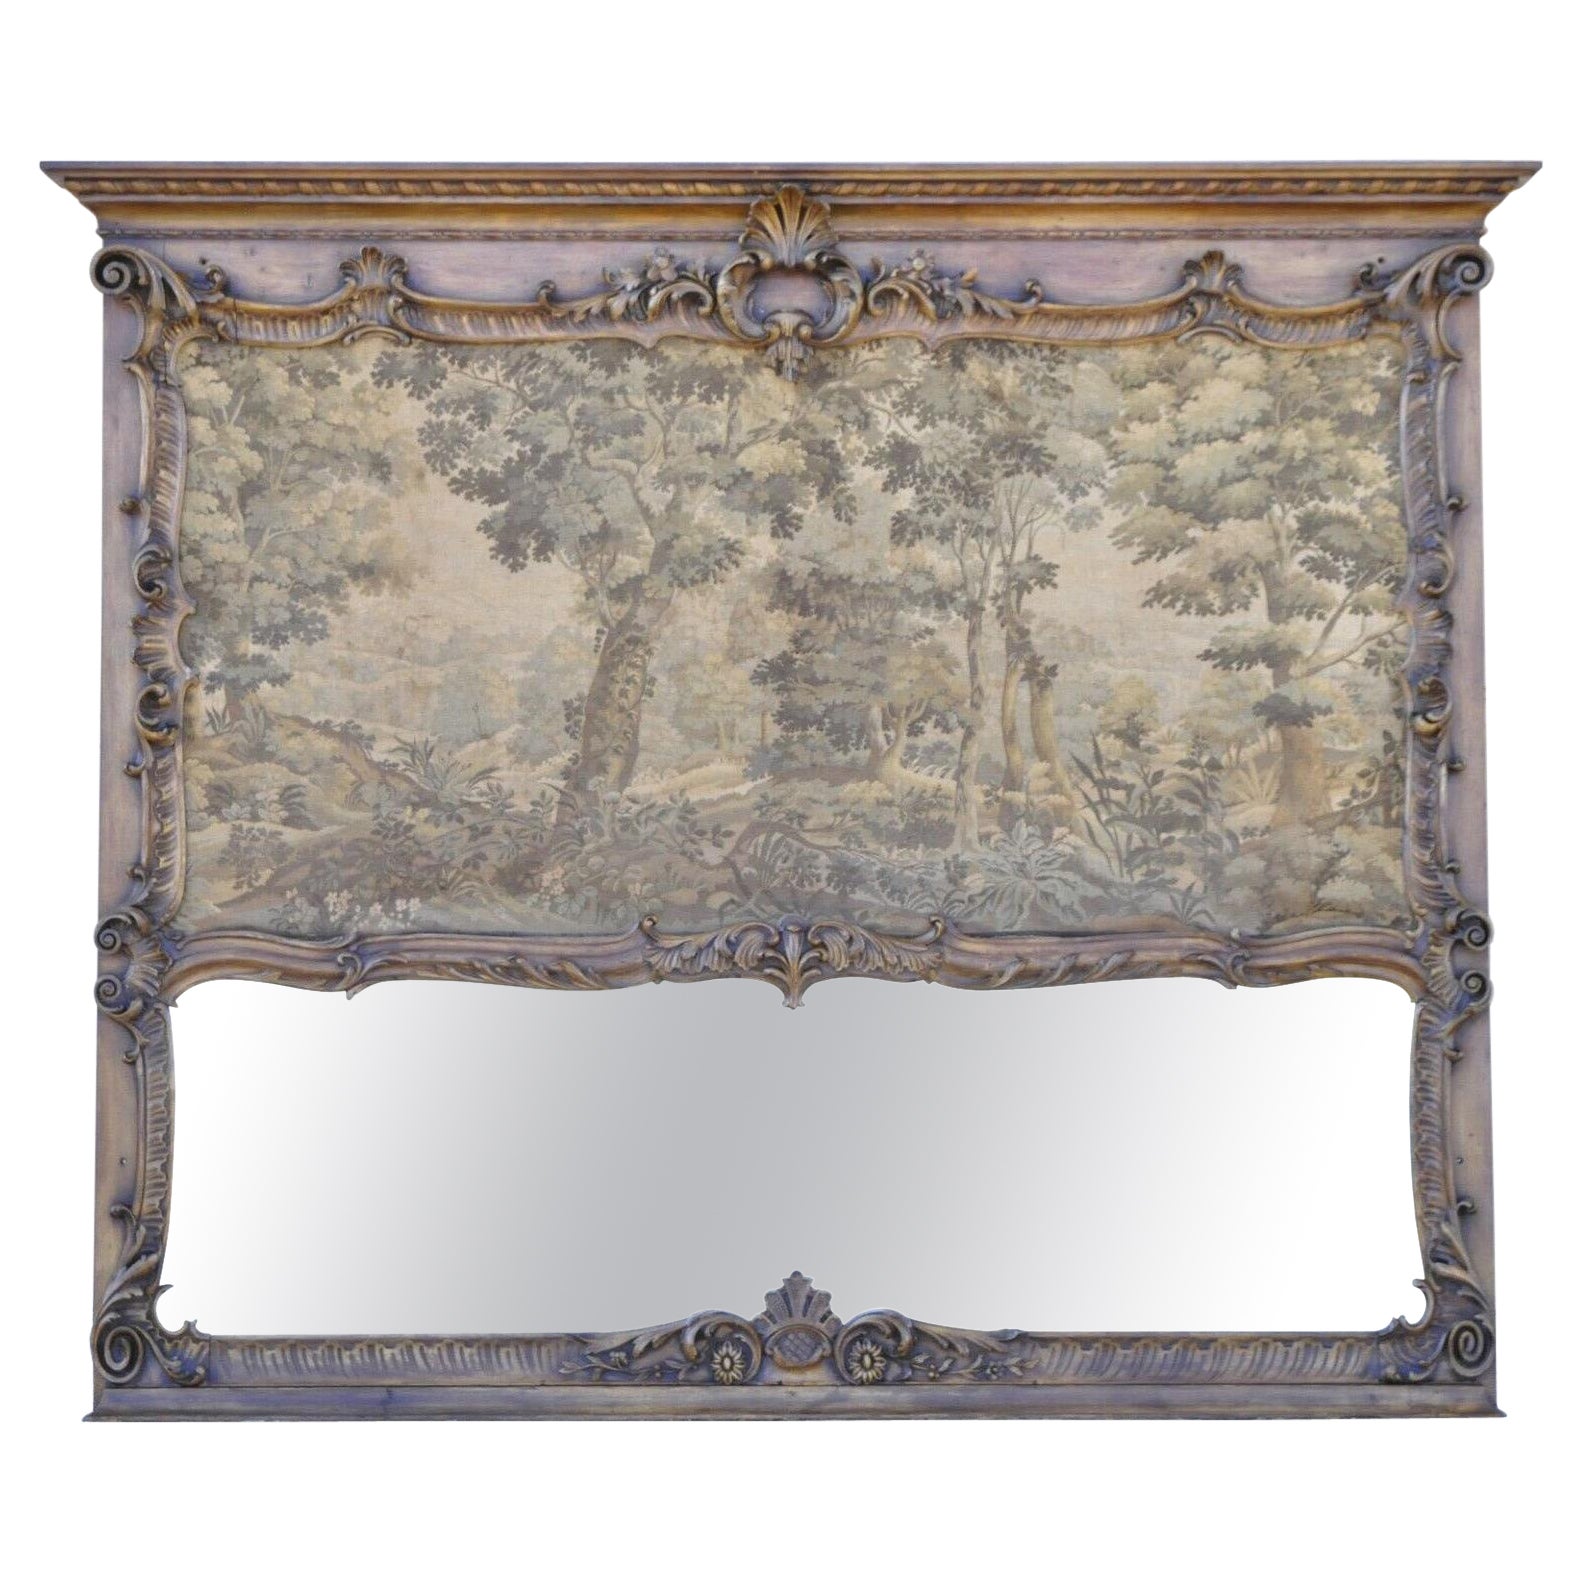 Antique miroir Trumeau de style Louis XV avec tapisserie